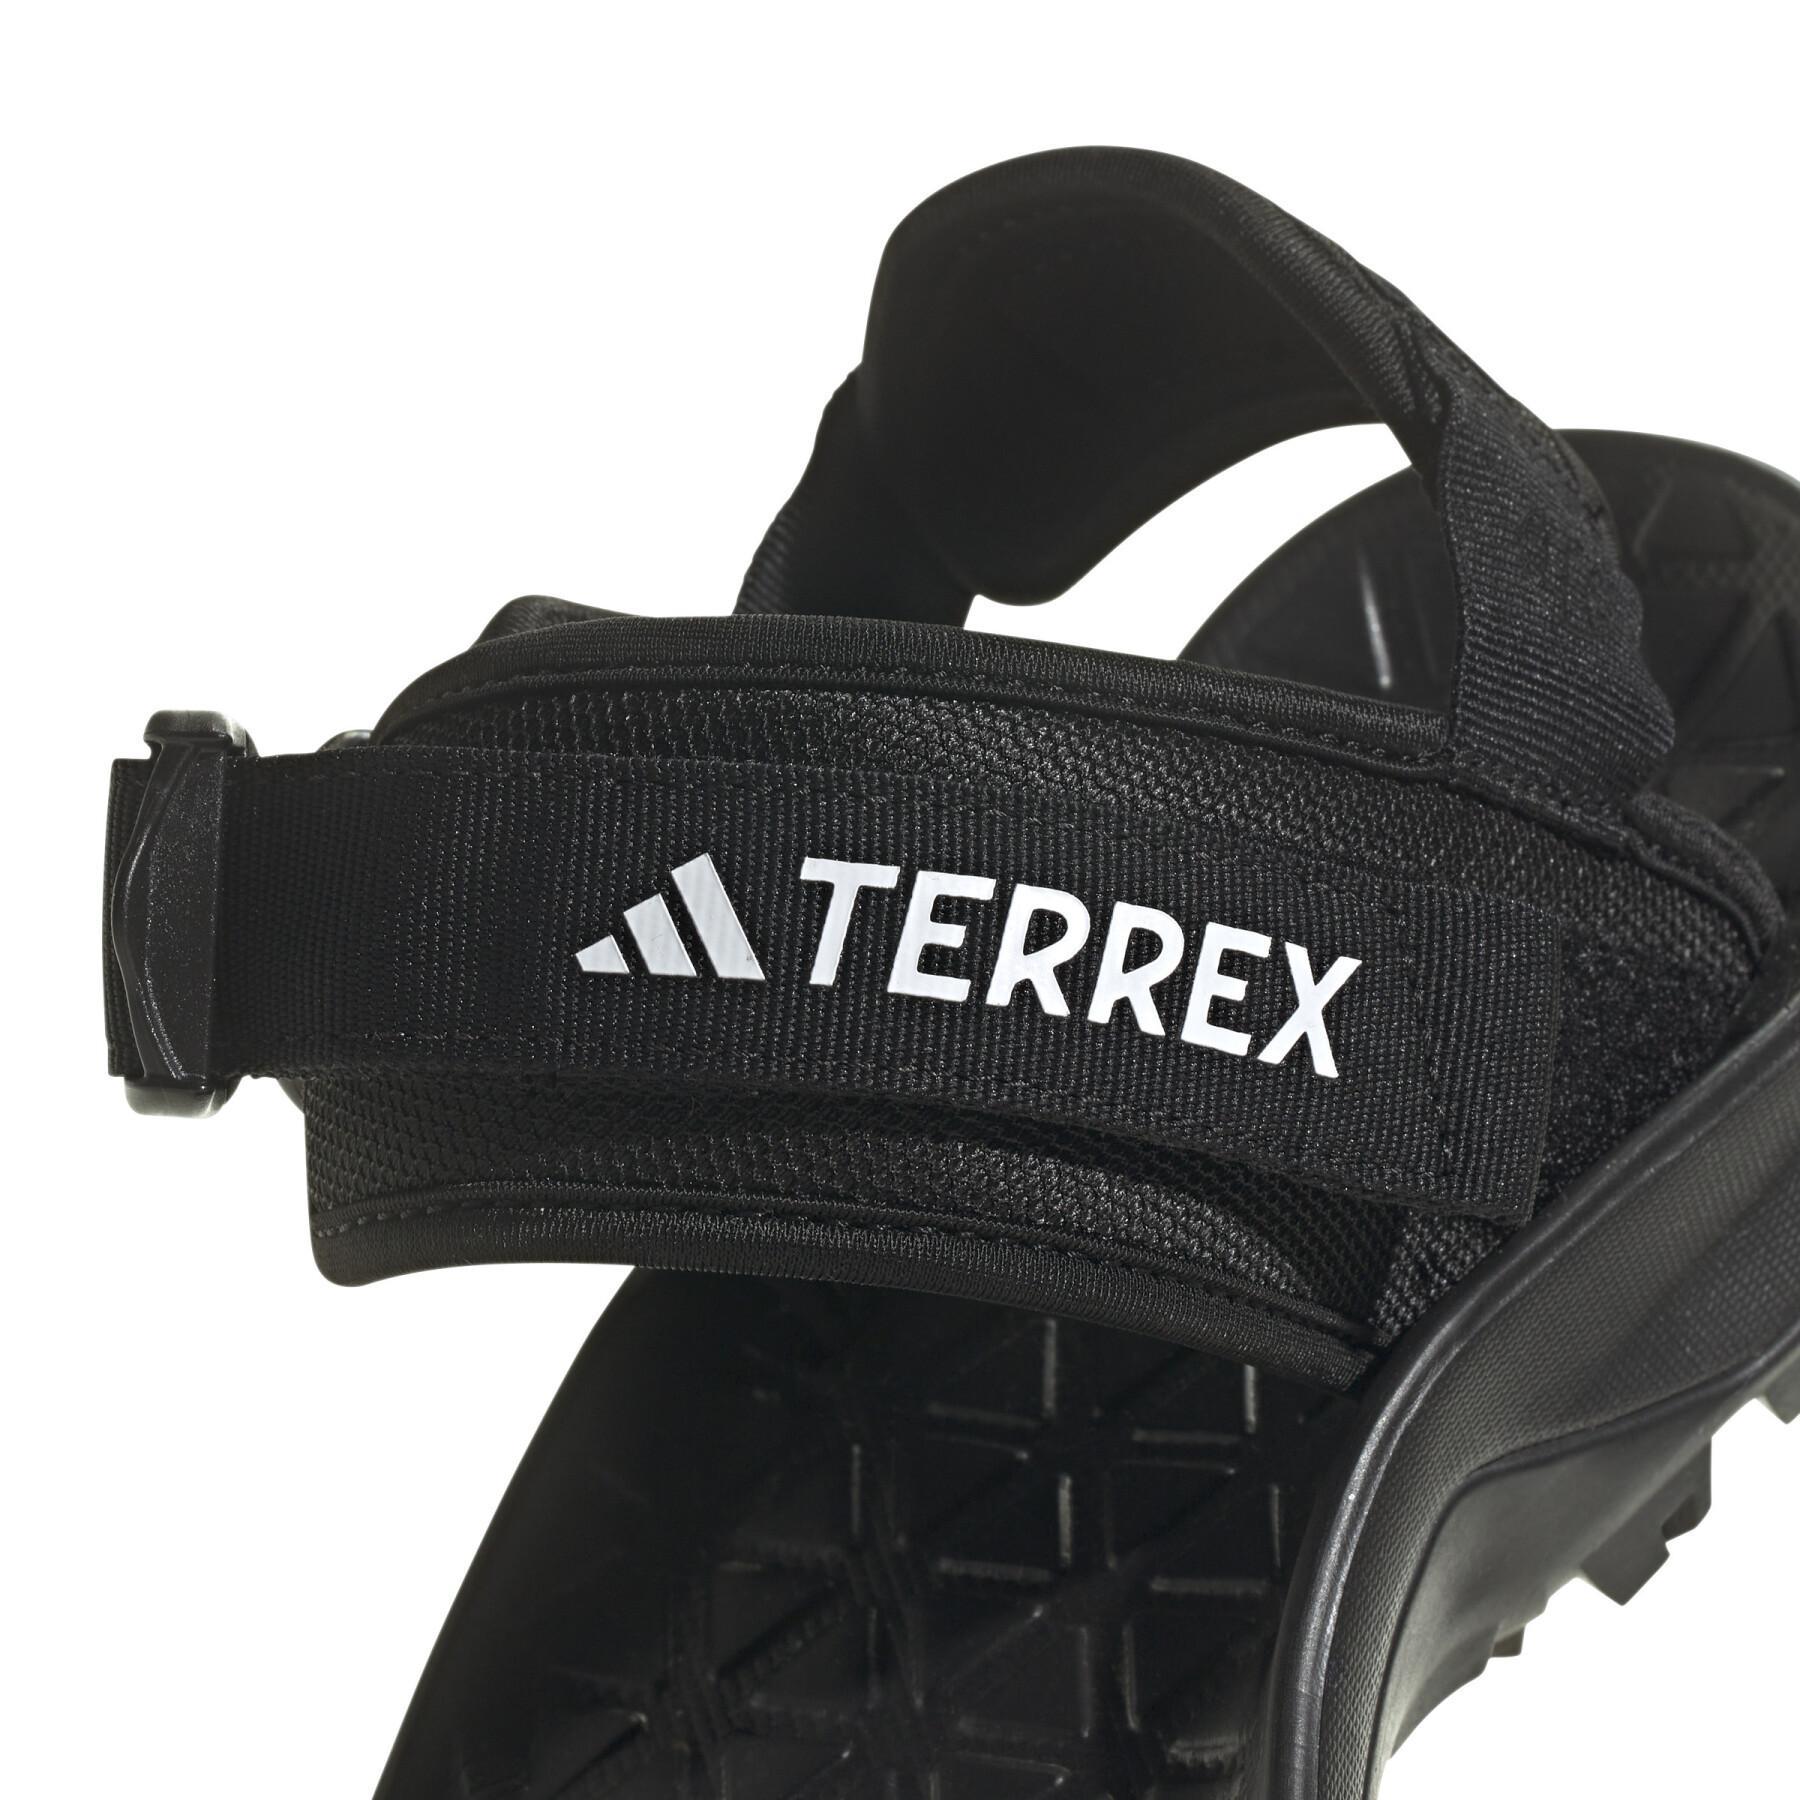 Sandali adidas Terrex Cyprex Ultra DLX